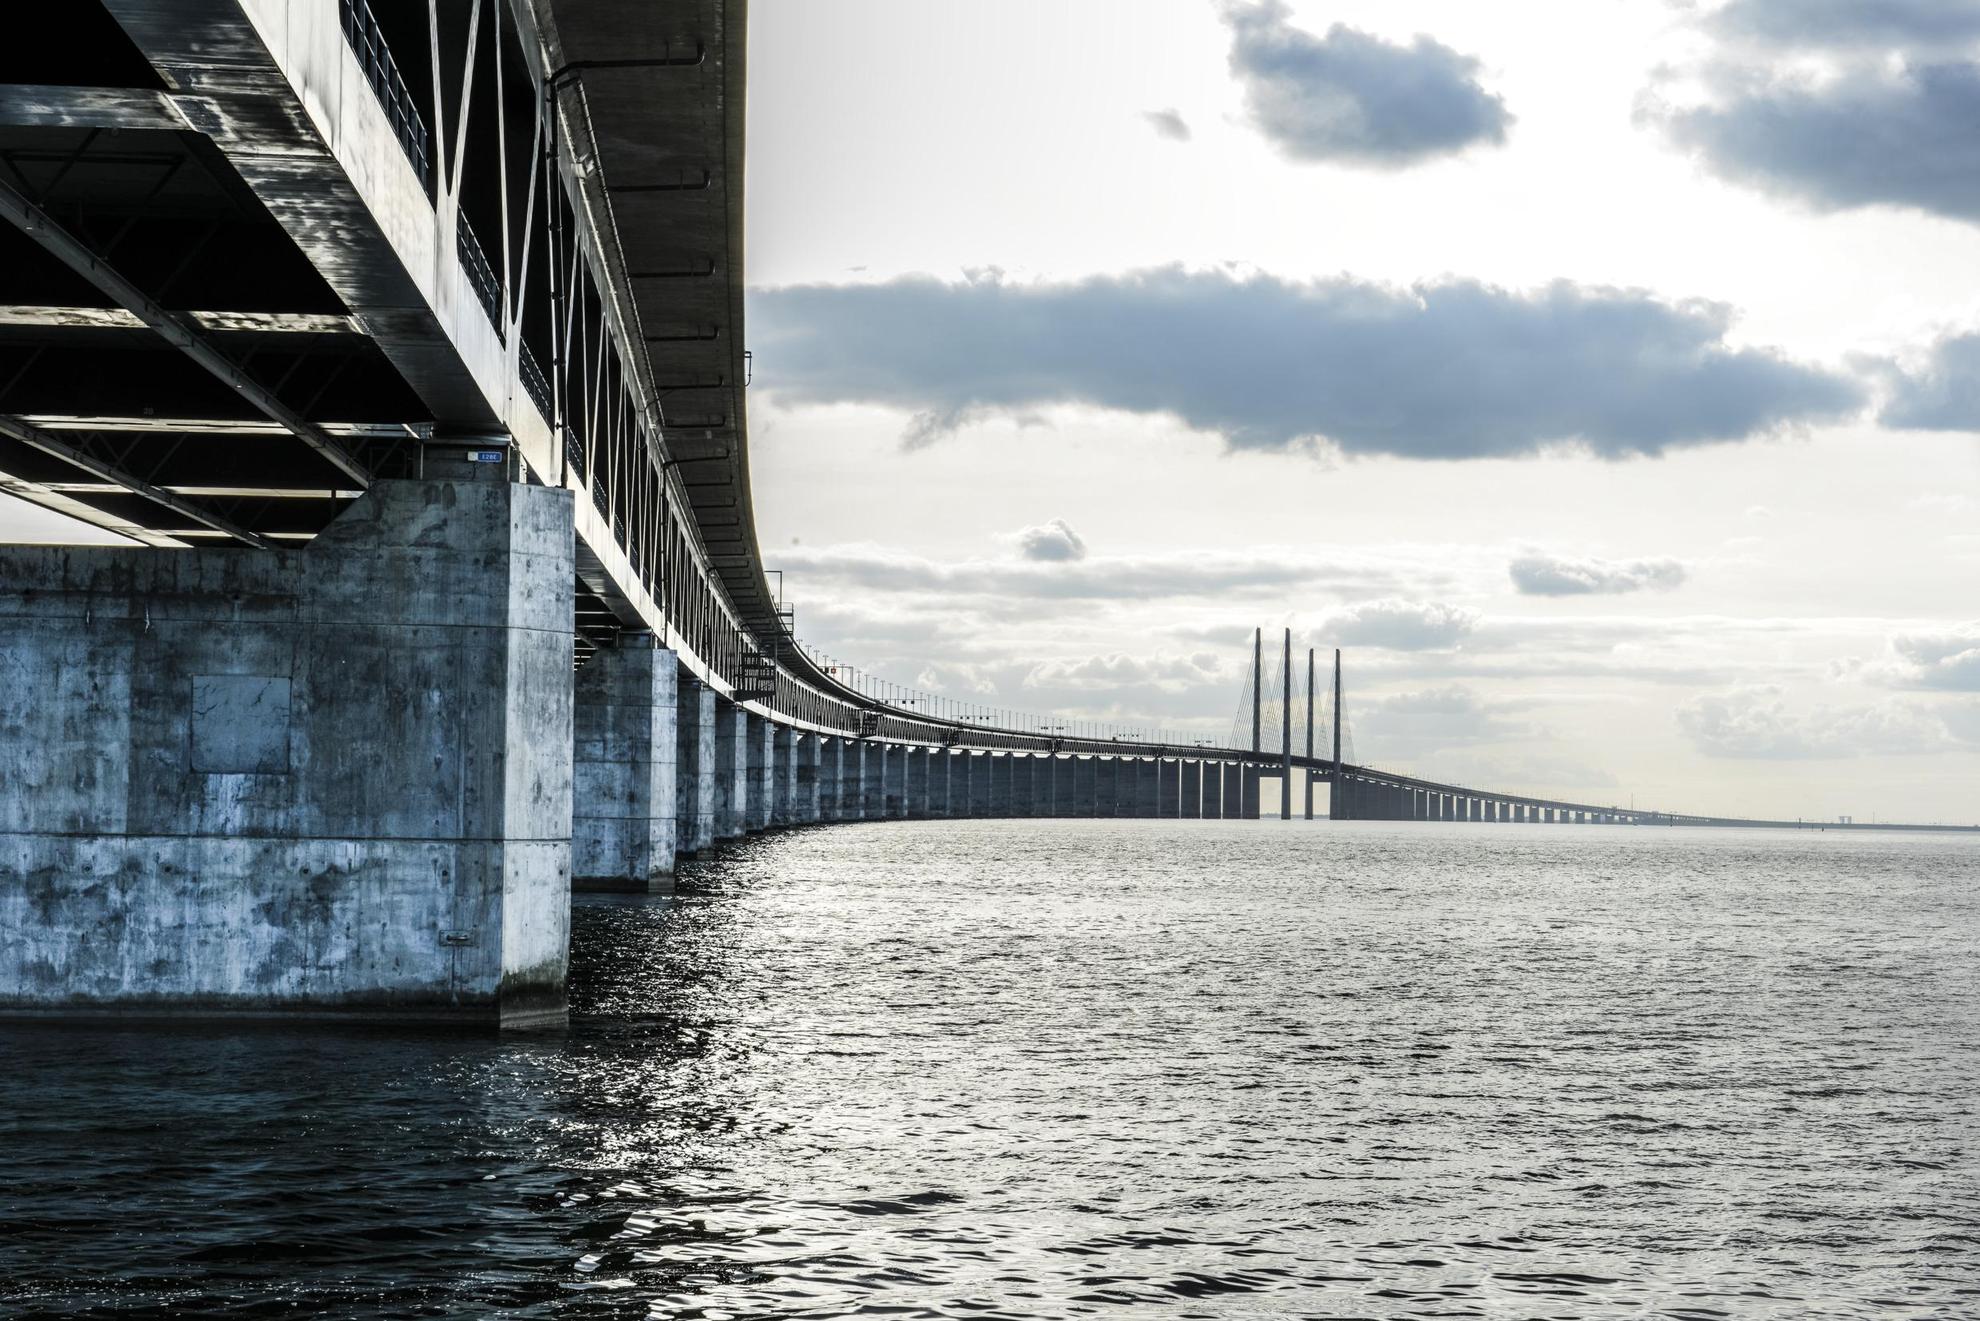 The Öresund Bridge from water level.